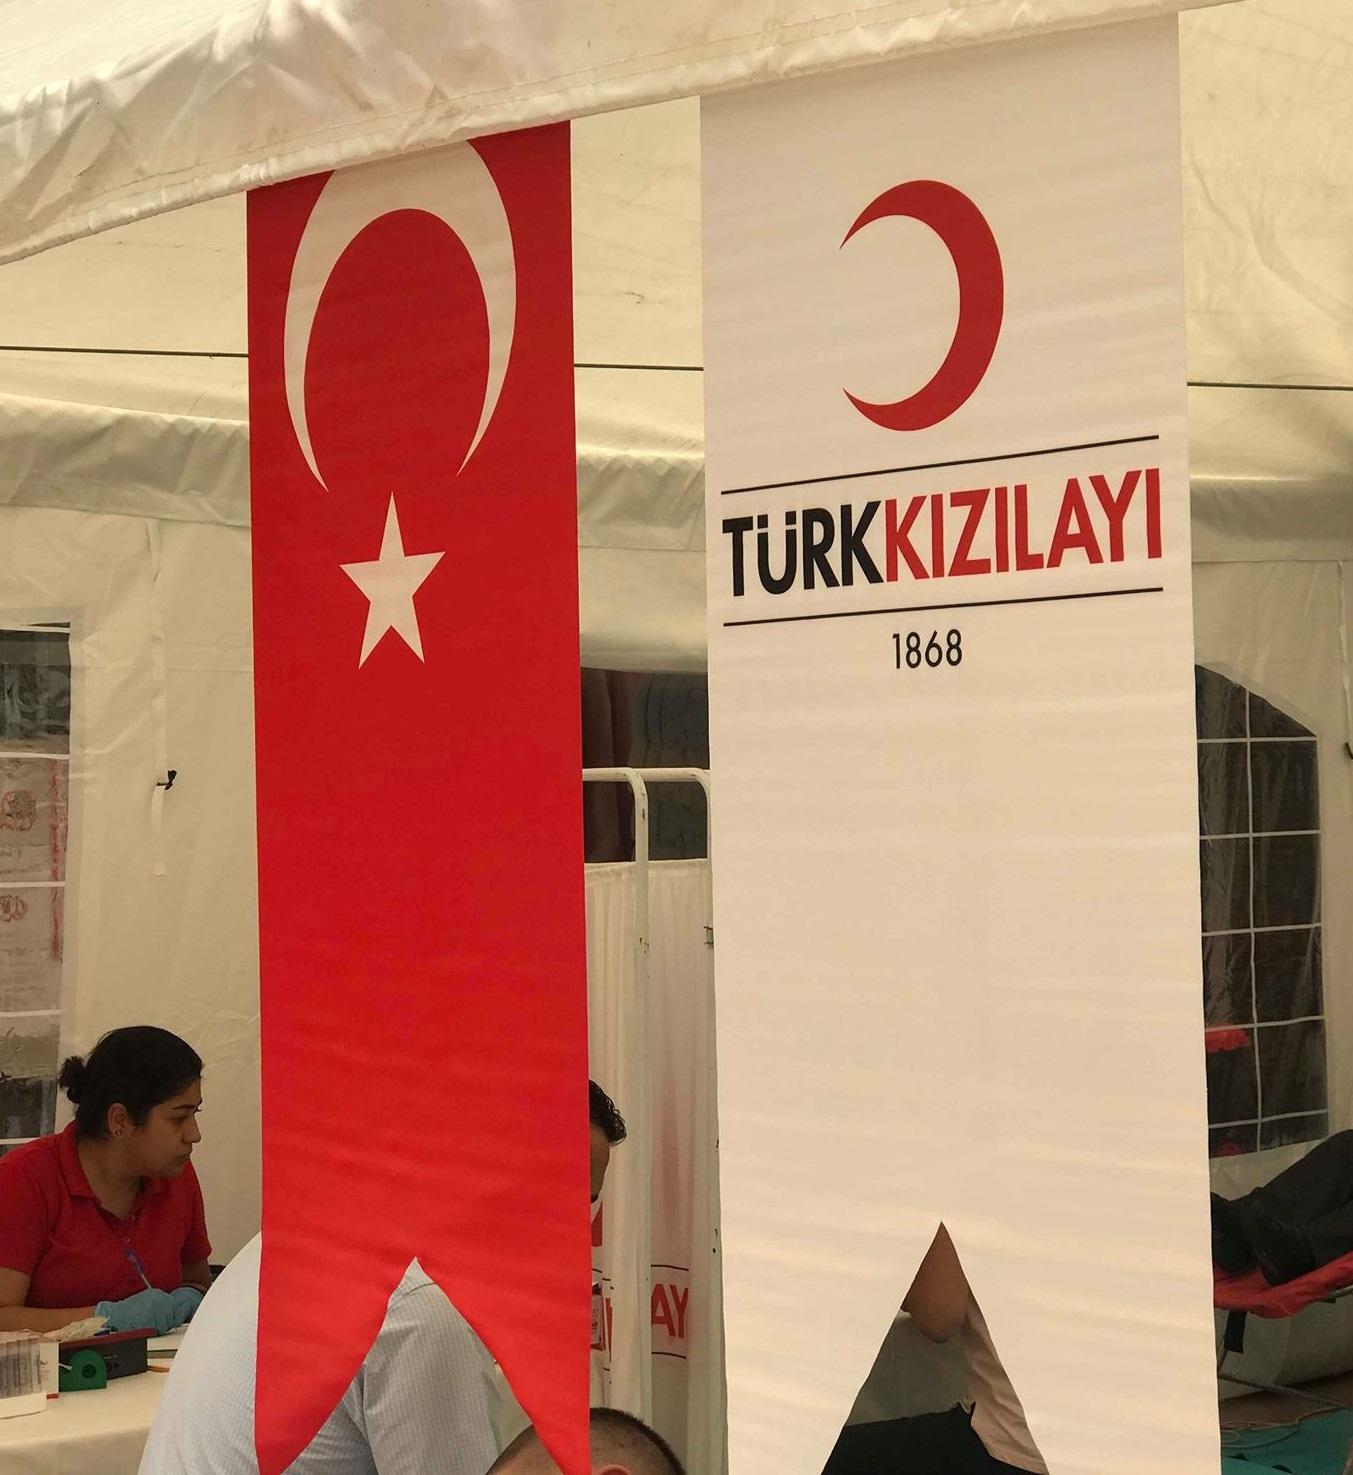 IAS İstanbul Ofisinden Türk Kızılayı’na Destek